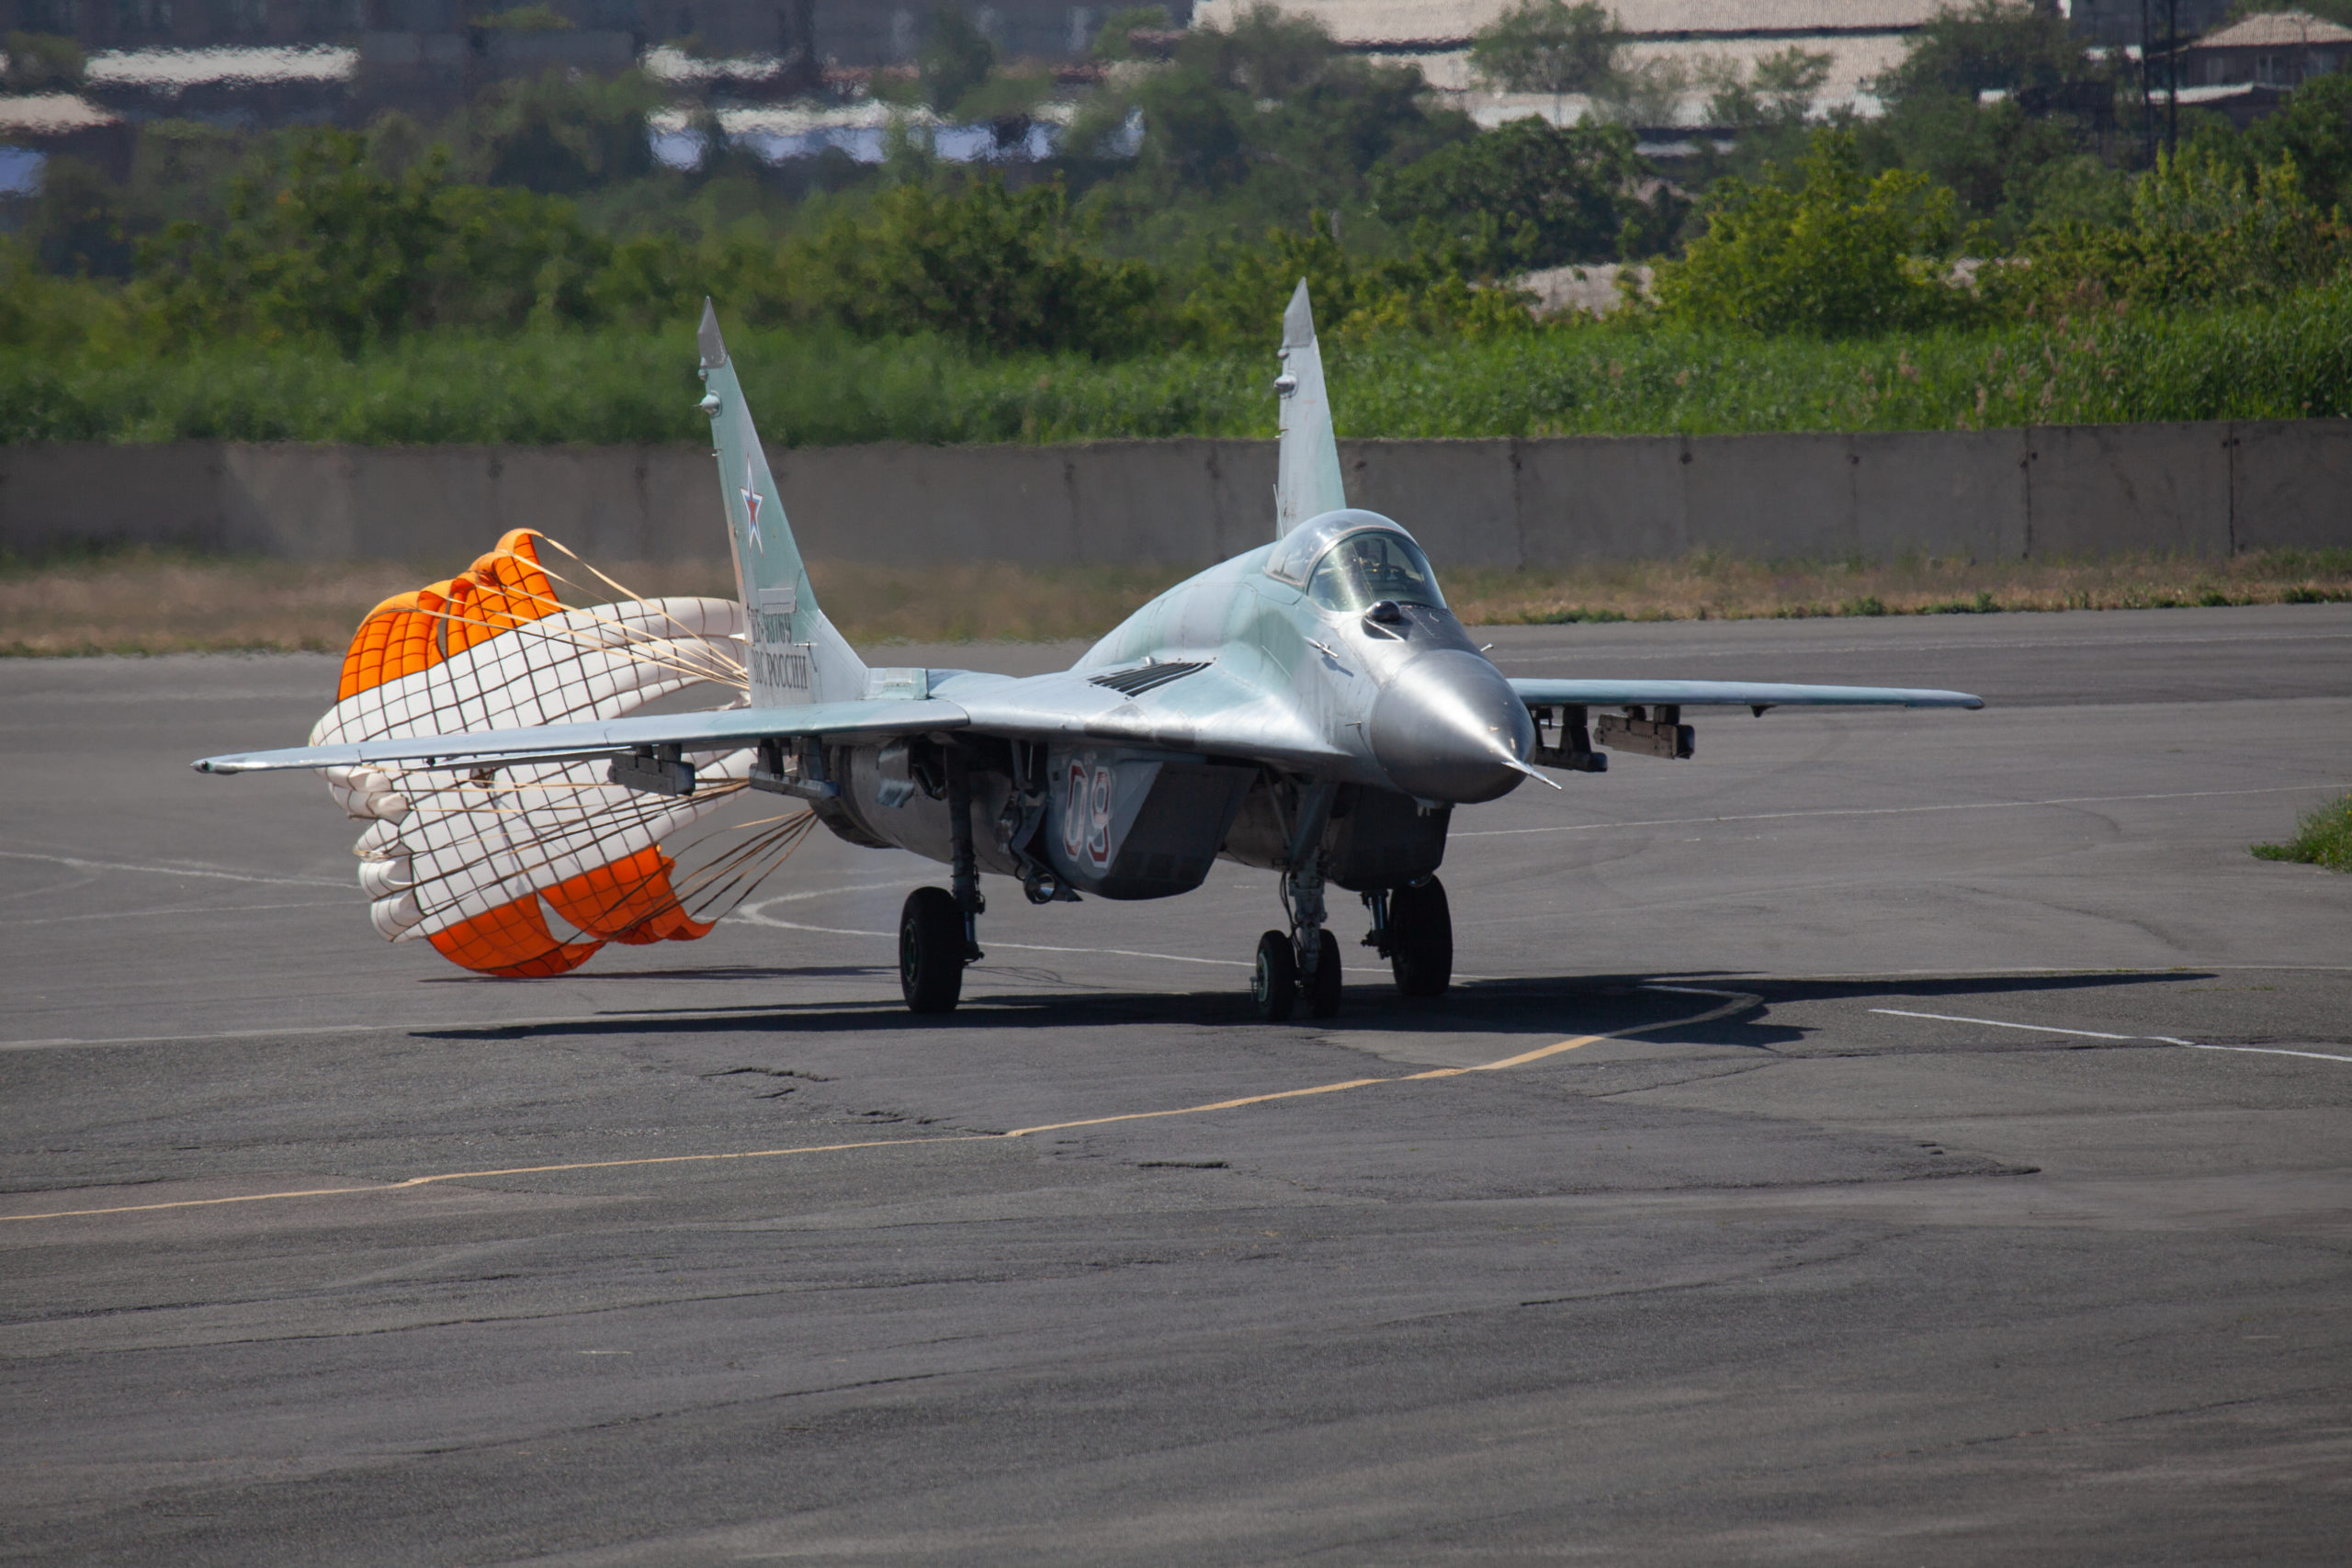 SUA plănuiesc să furnizeze Ucrainei avioane de vânătoare F-16. Reacția Rusiei: „Riscuri colosale”